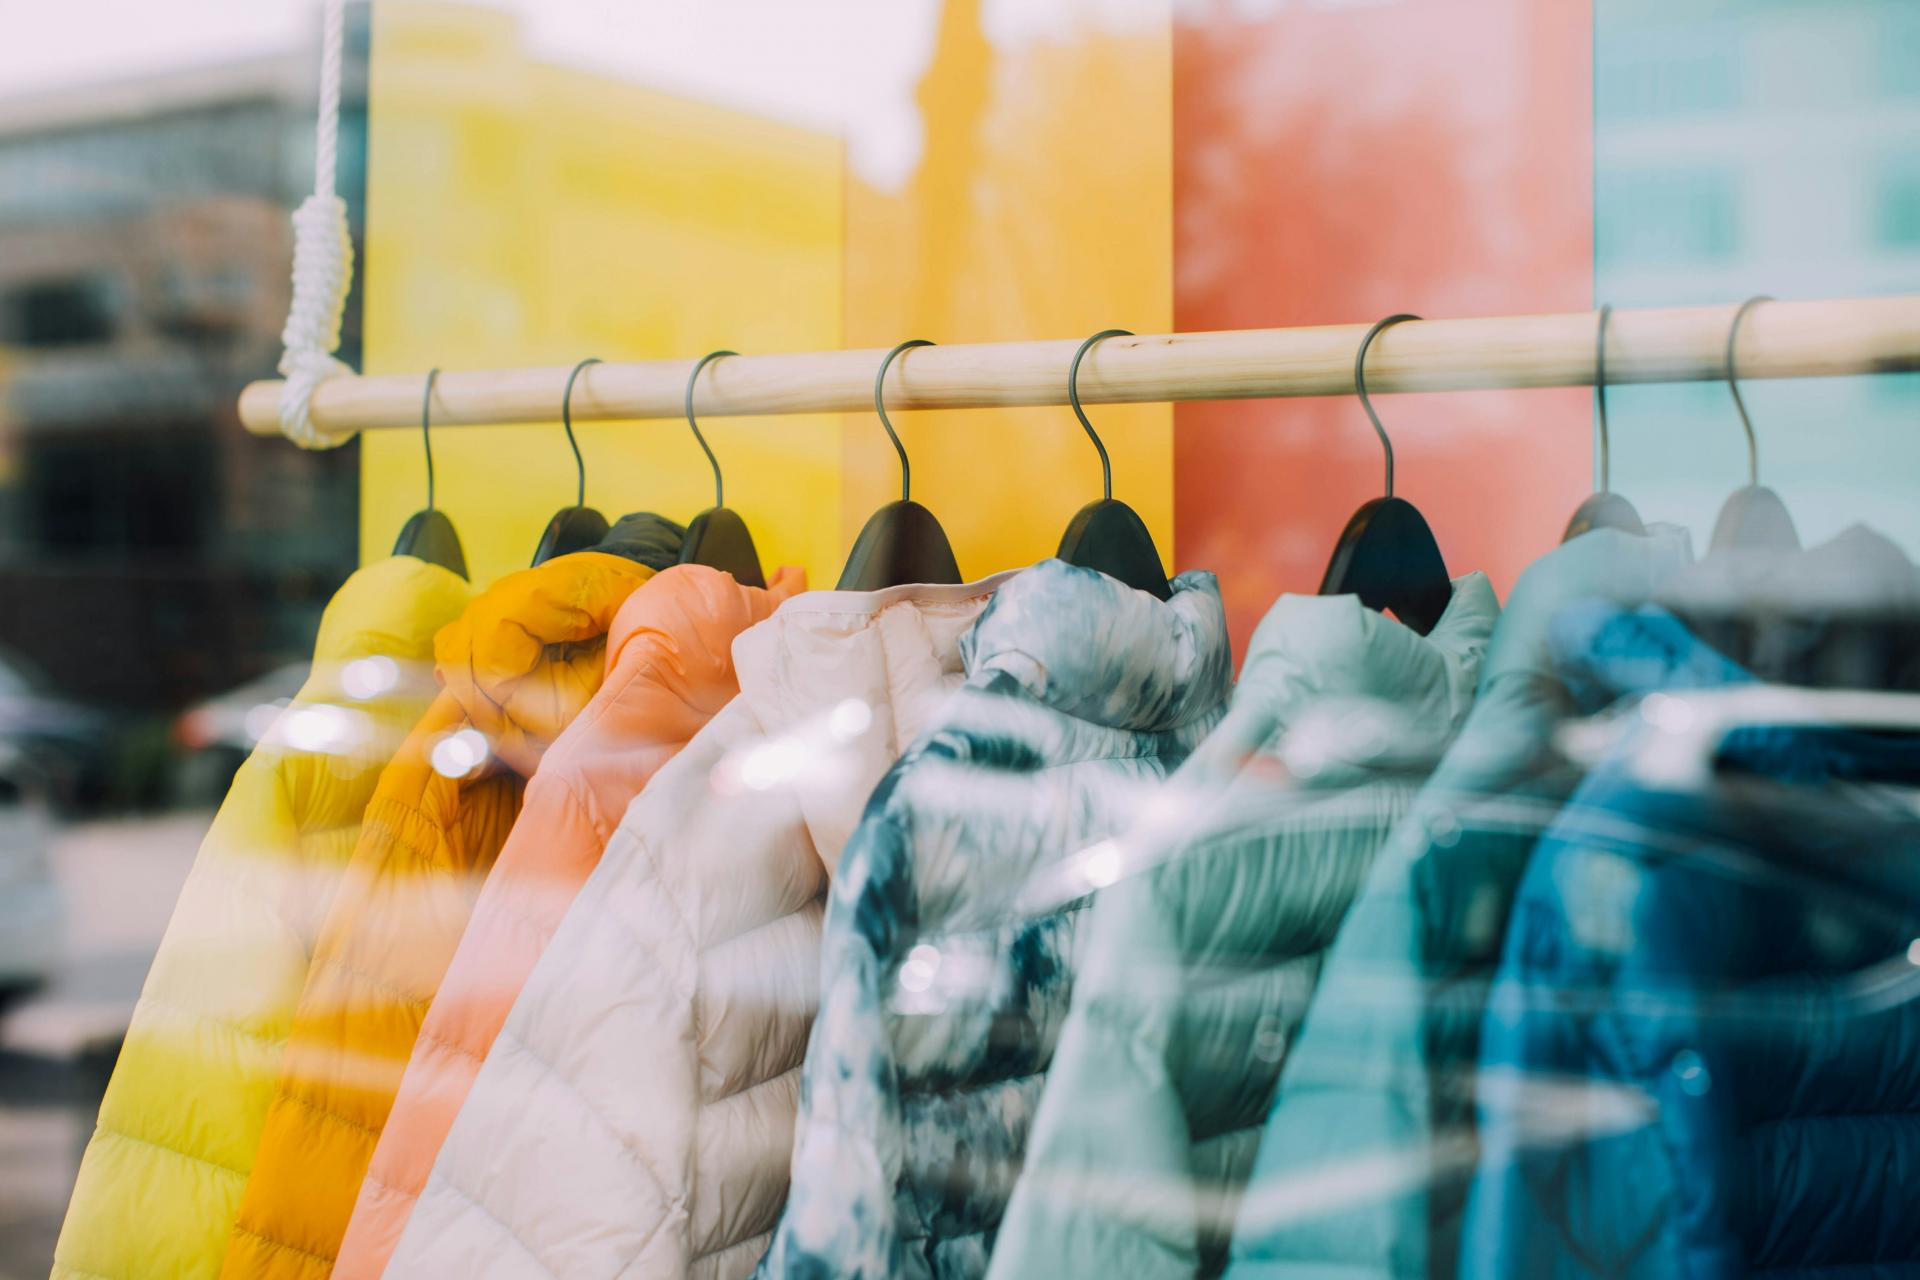 Slováci pri nákupe odevov stále uprednostňujú kamenné predajne, ukazuje prieskum